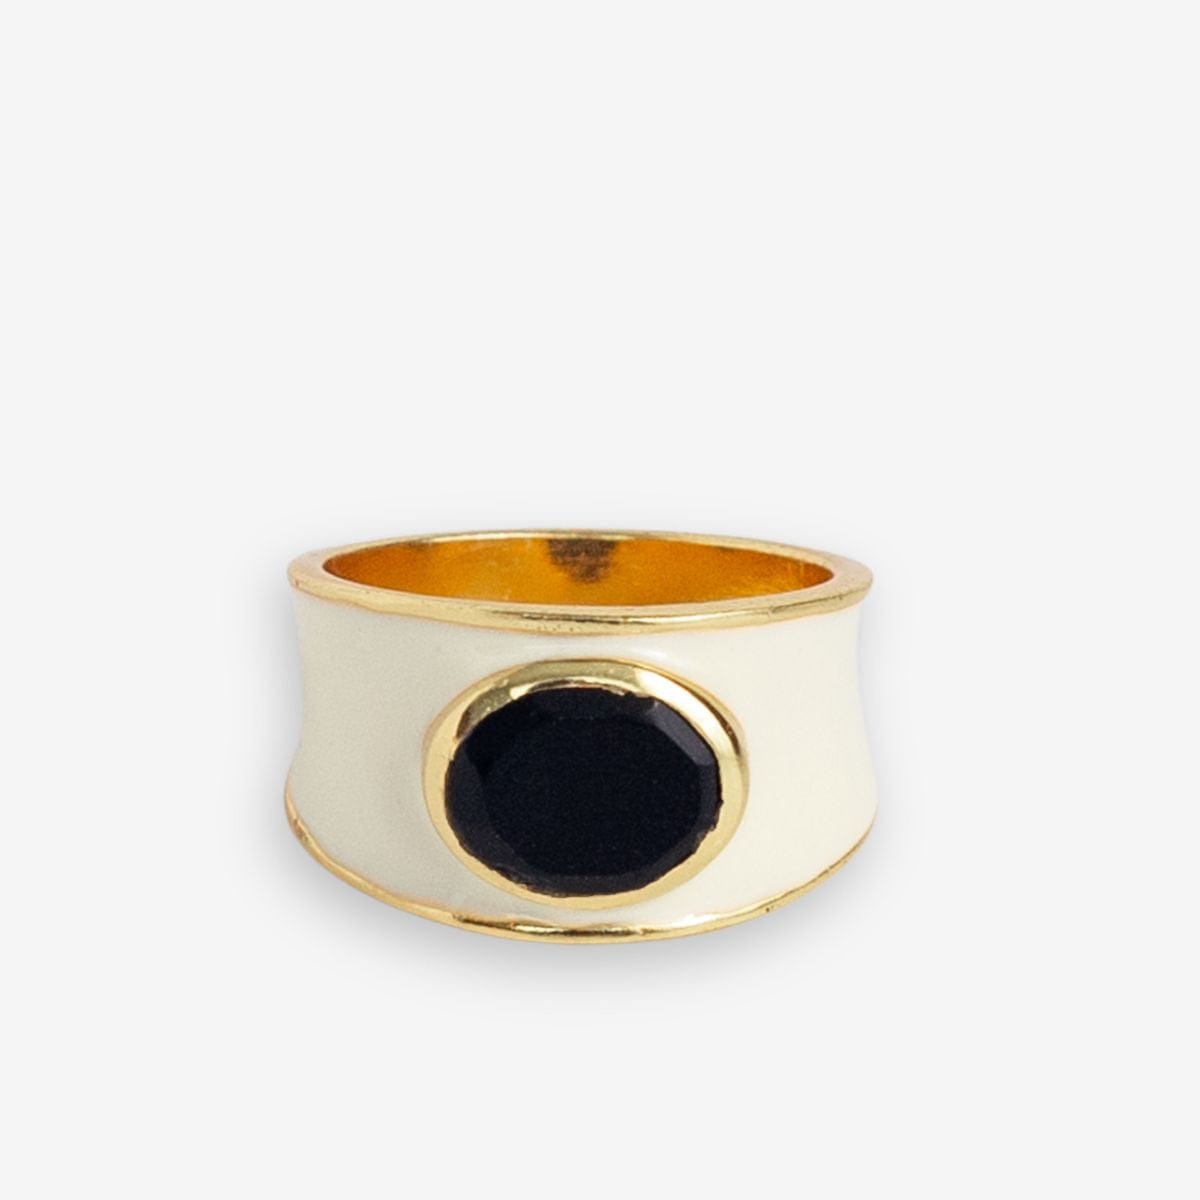 Hazel Oval Stone With Enamel Band Ring Ivory/Black Wholesale- Size 7